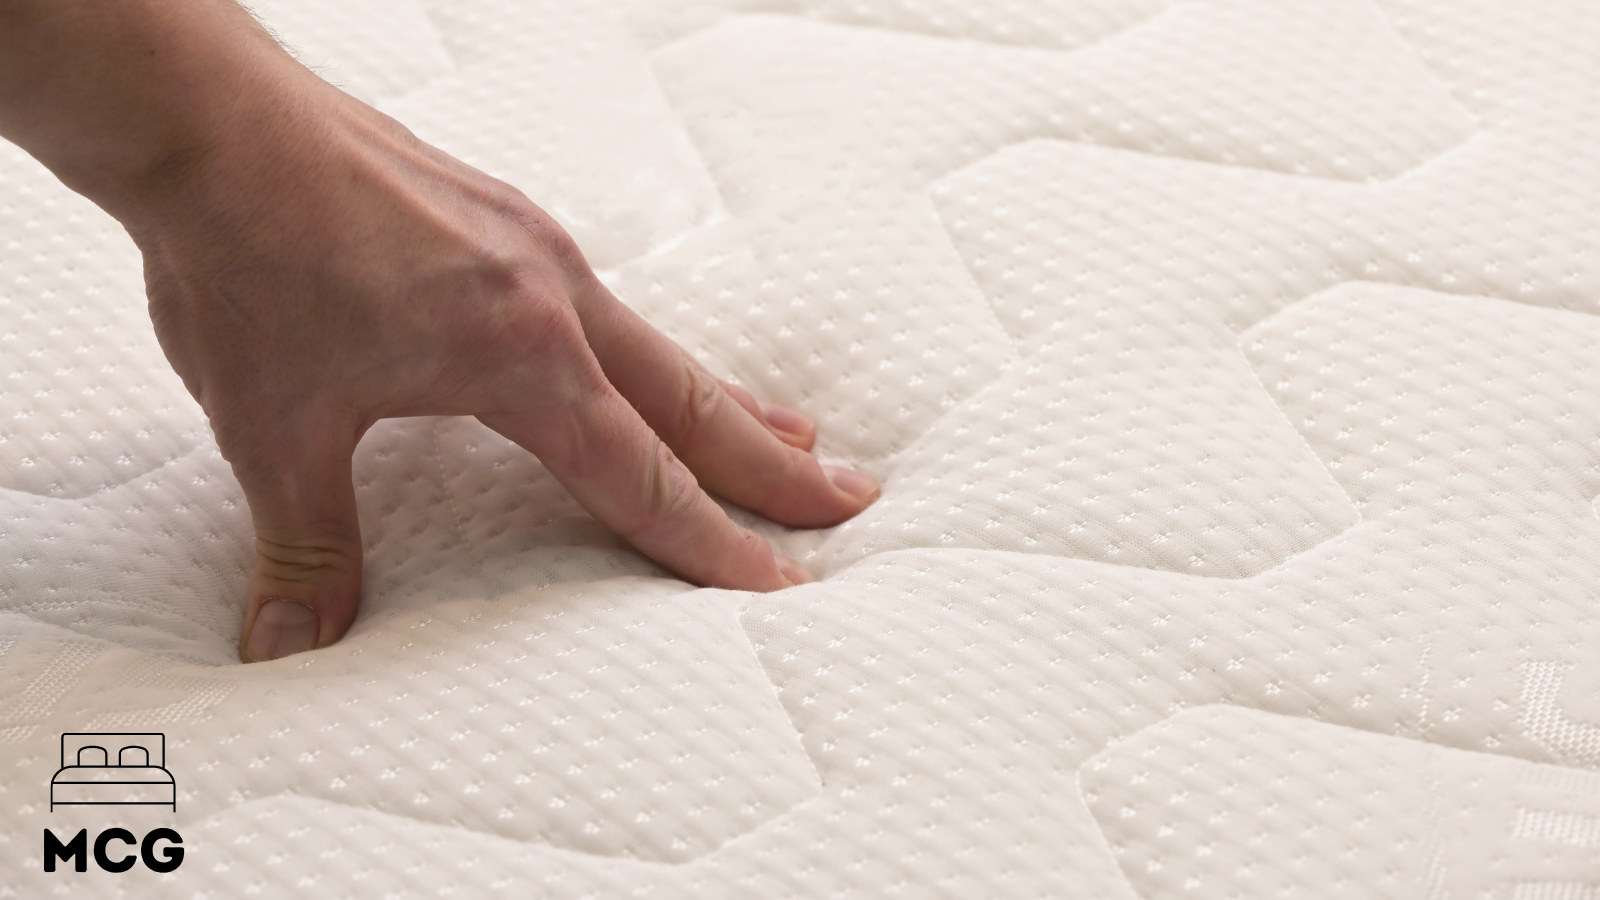 hand on a mattress surface